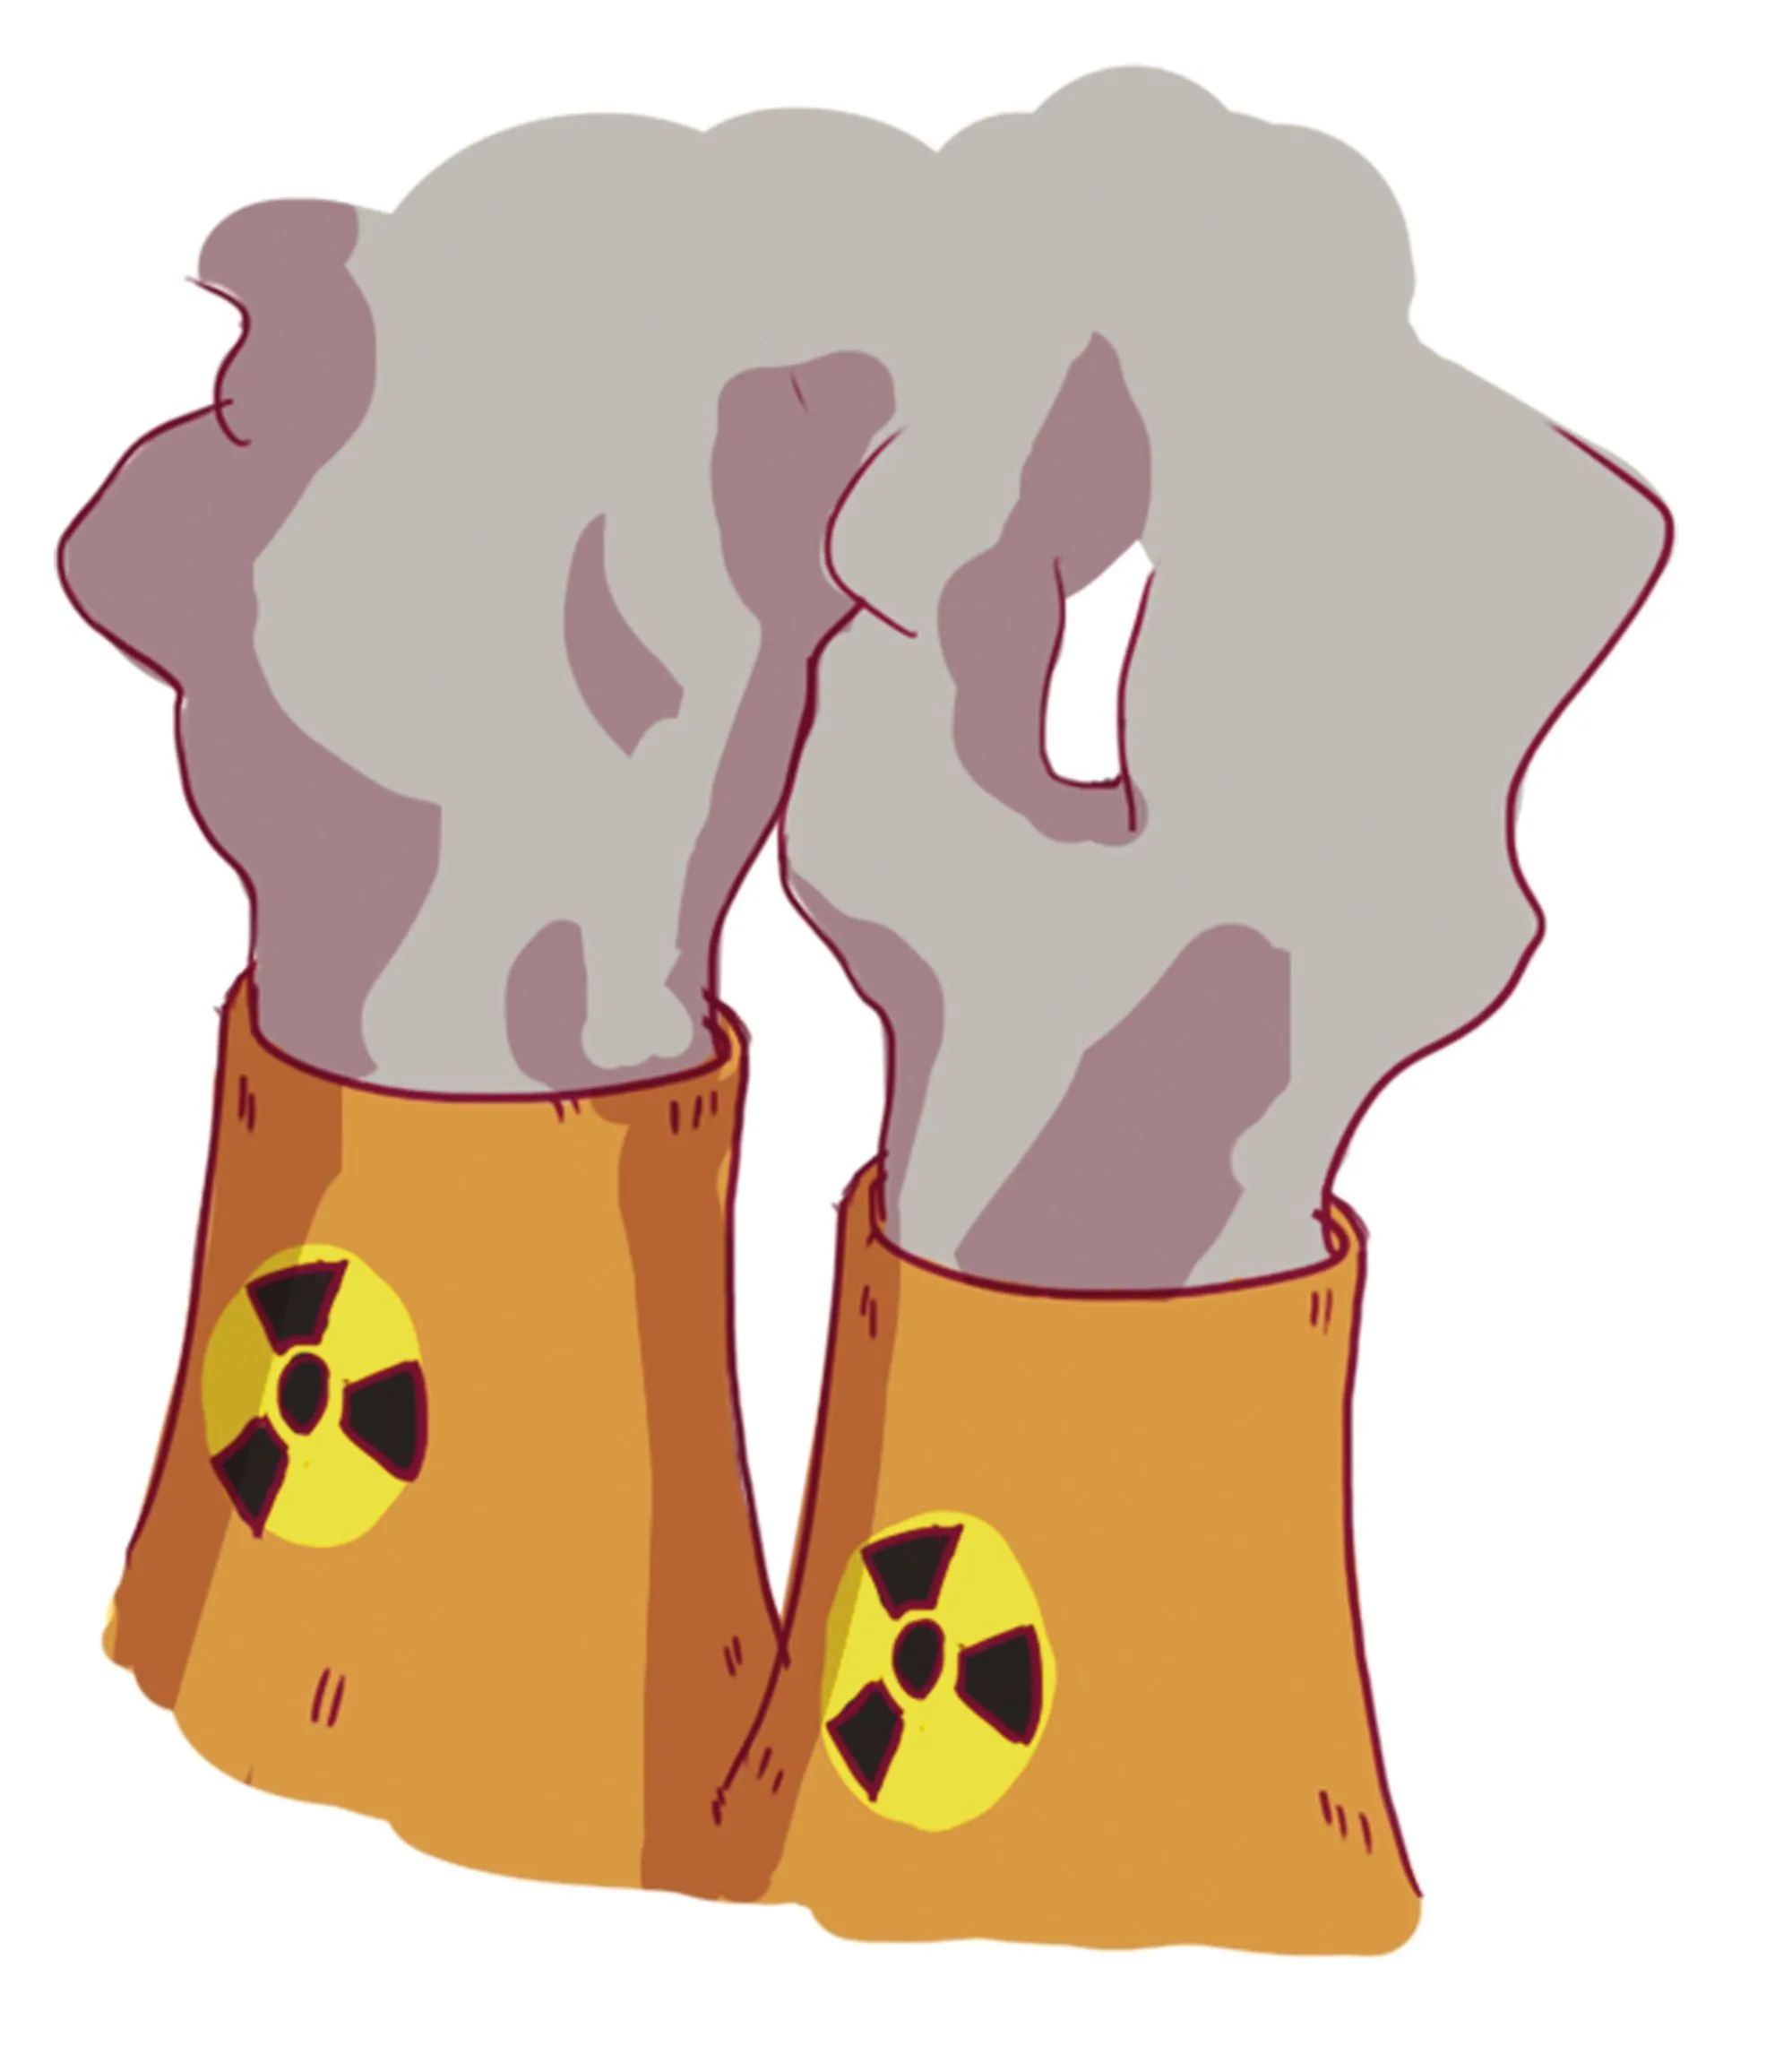 cheminées de centrale nucléaire